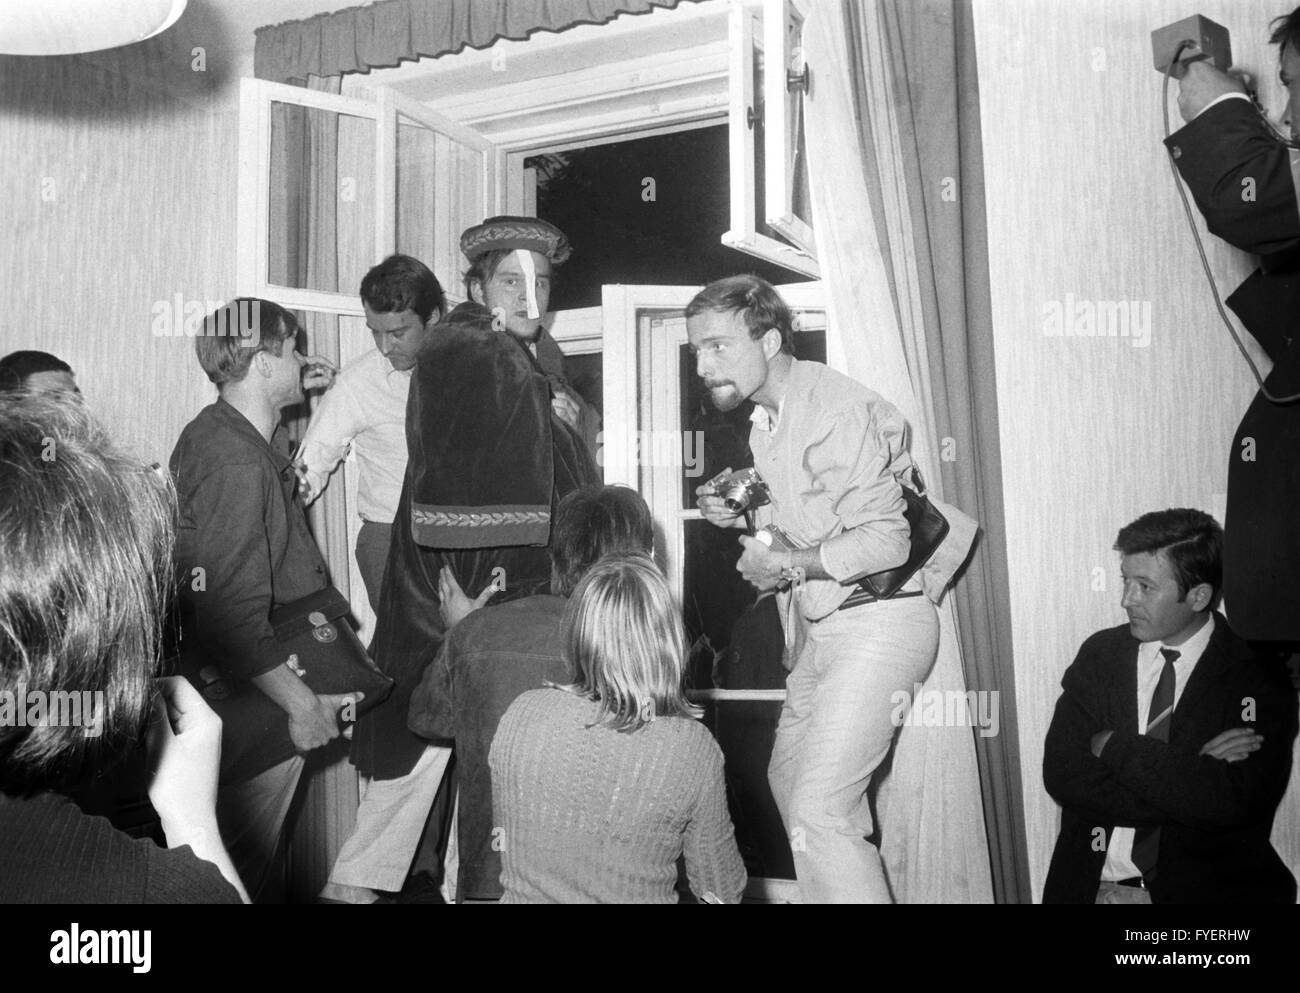 Ein Student hat auf dem Rektor Kleid gelegt, während besetzen das Rektorat der FU Berlin am 27. Juni 1968. Studenten forderten für eine offene Diskussion für Rektor Prof. Dr. Ewald Harndt, die sich weigerten. Stockfoto